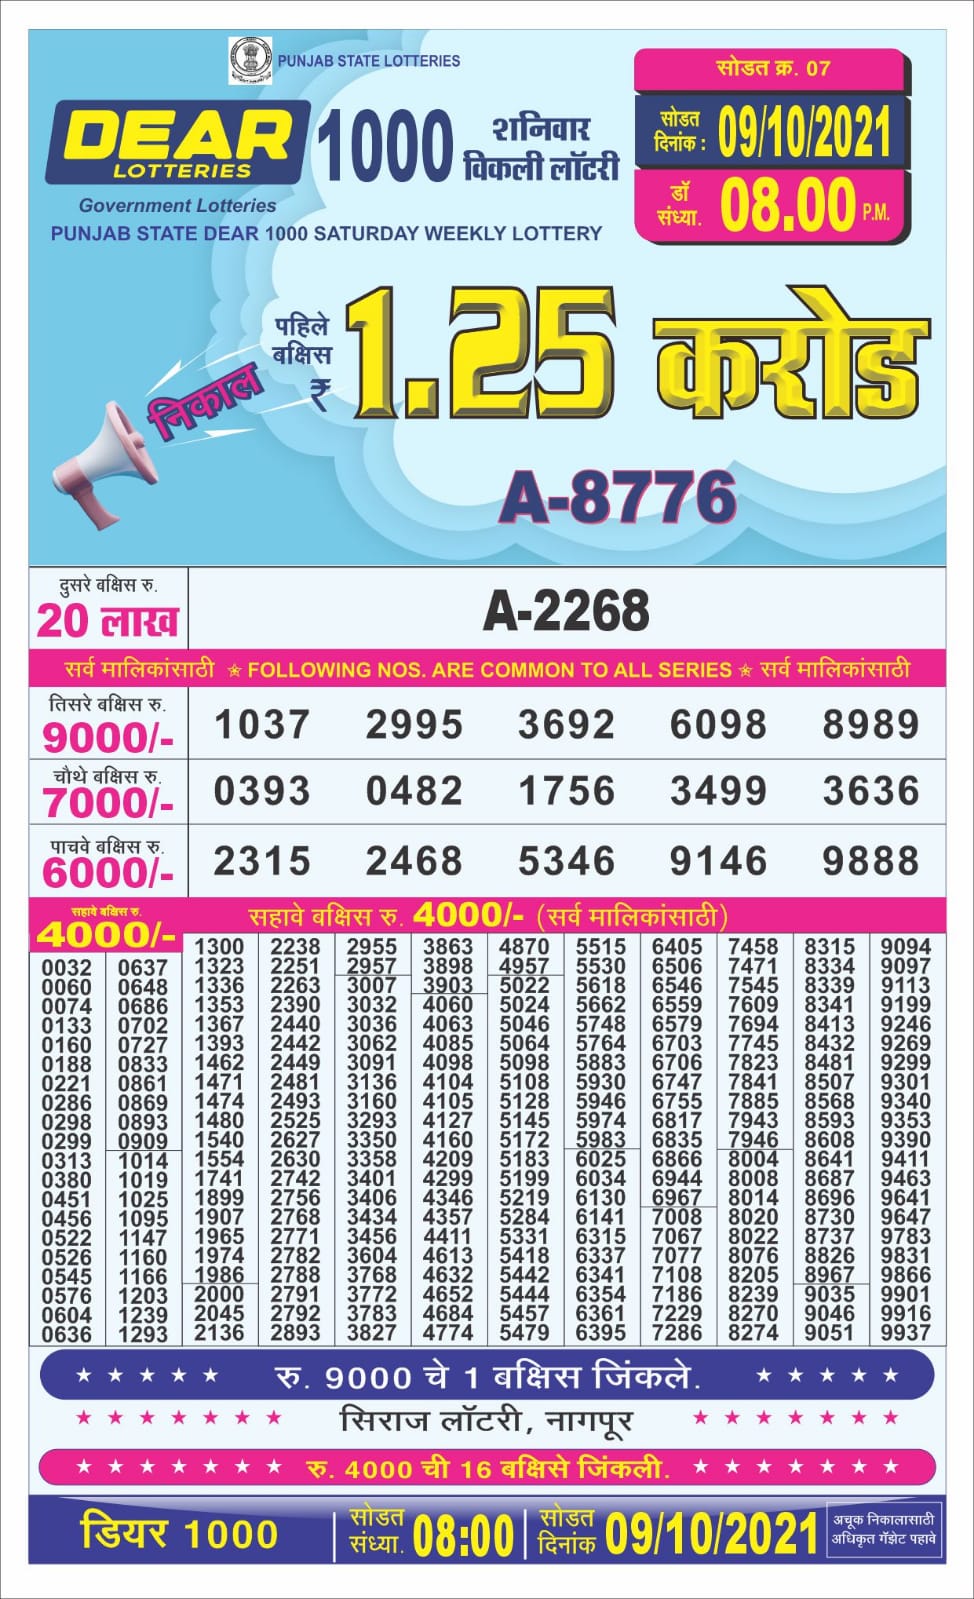 Dear 1000 Lottery Result- 09.10.2021